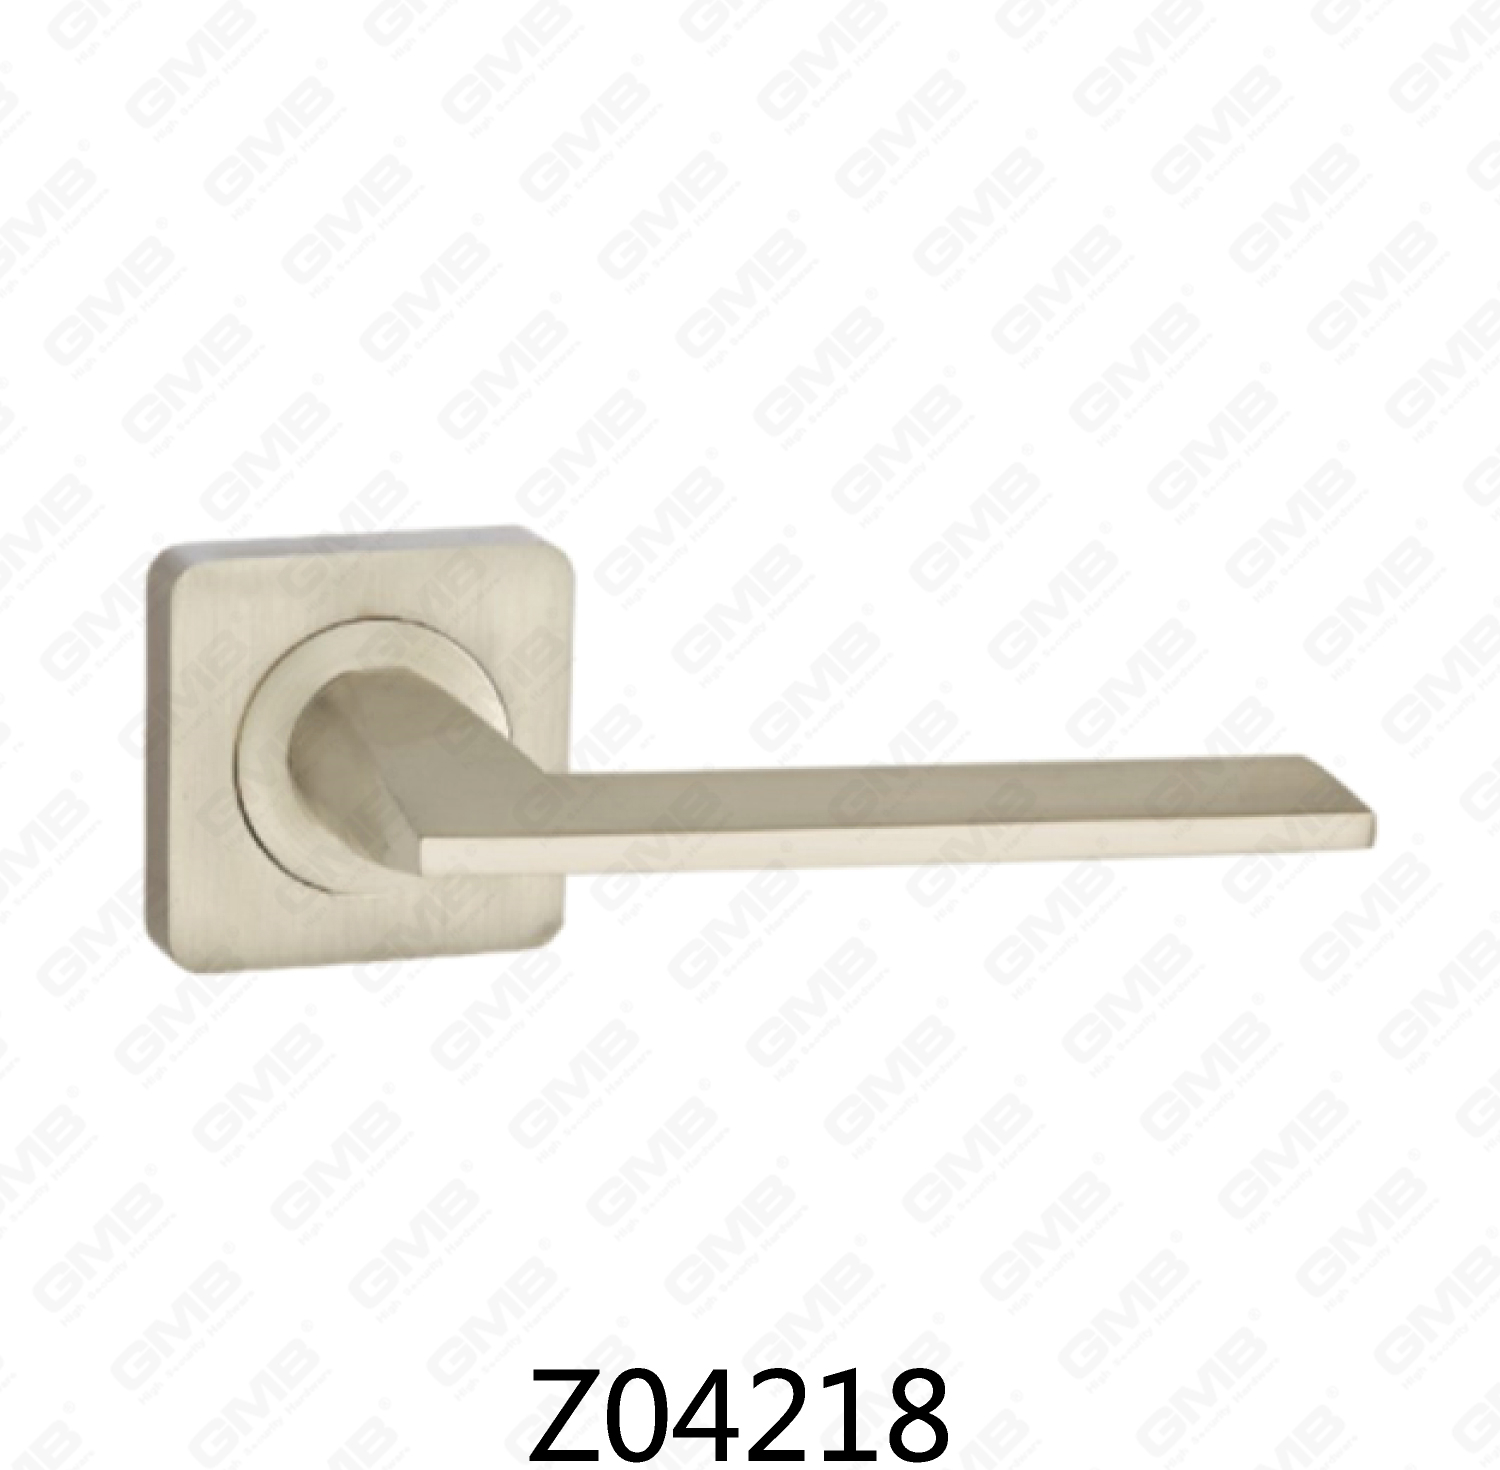 ידית דלת רוזטת אלומיניום מסגסוגת אבץ של Zamak עם רוזטה עגולה (Z04218)